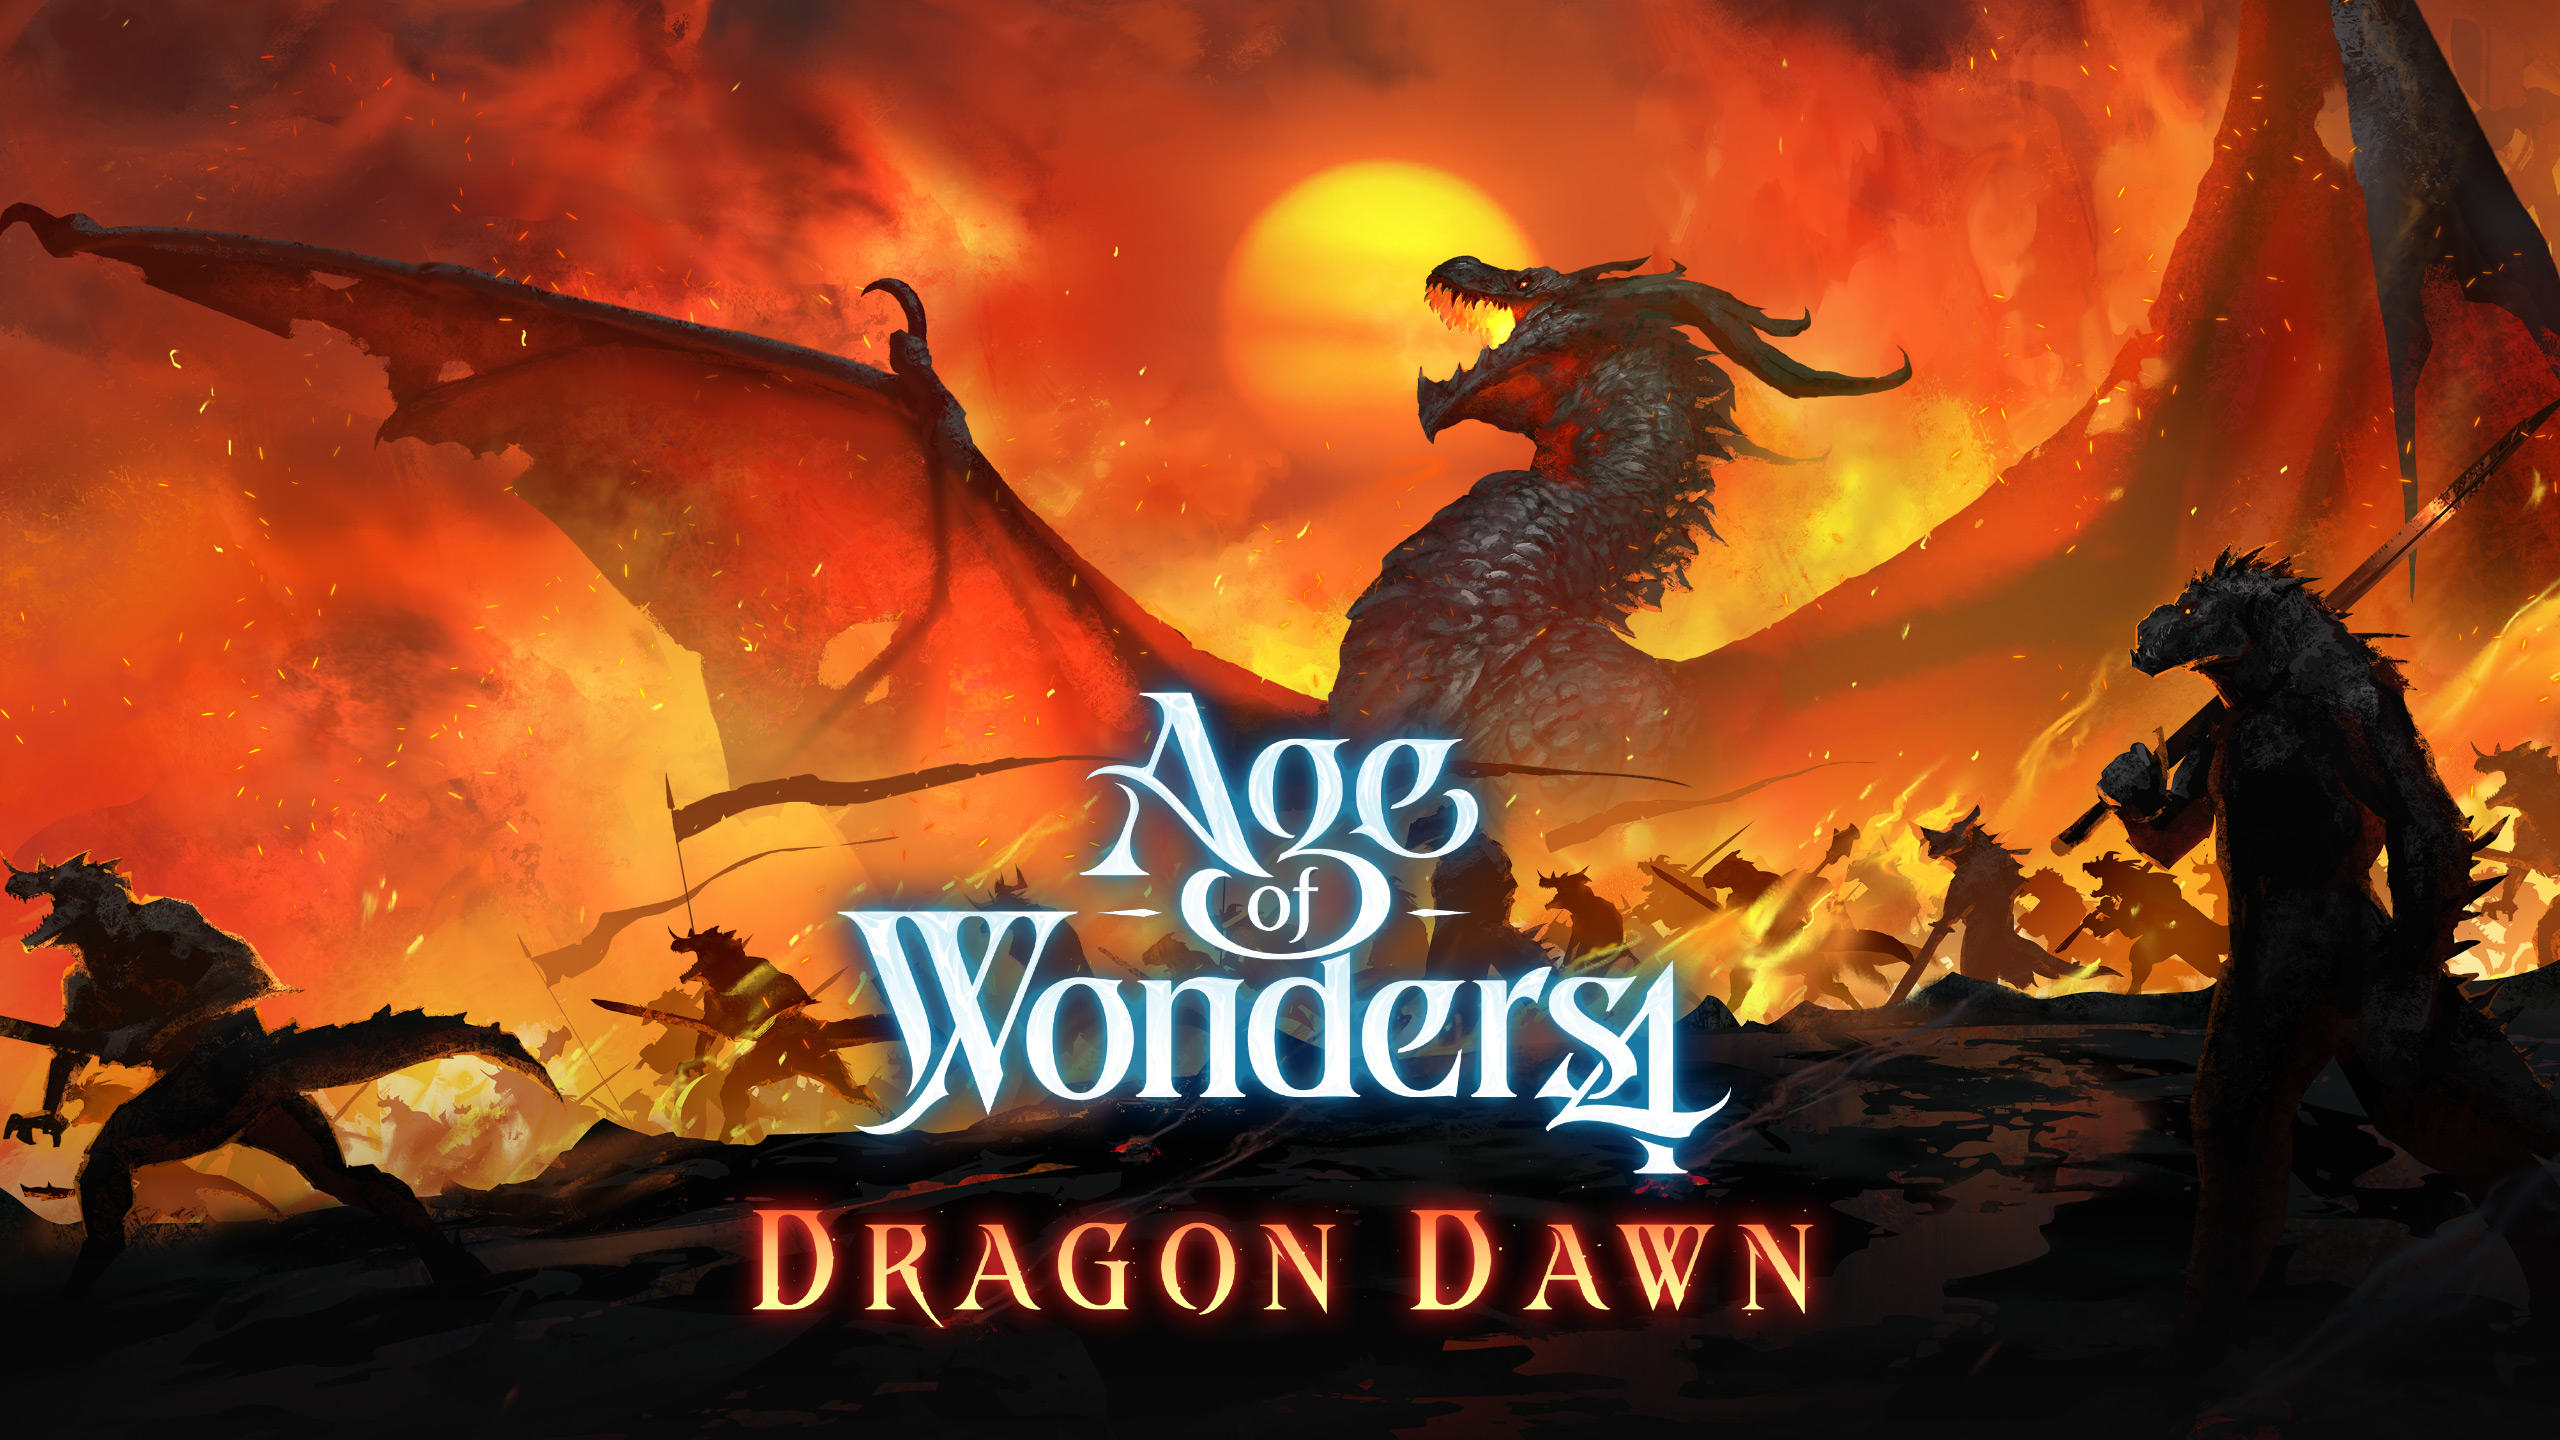 Sleeping dragons awaken in Age of Wonders 4: Dragon Dawn expansion